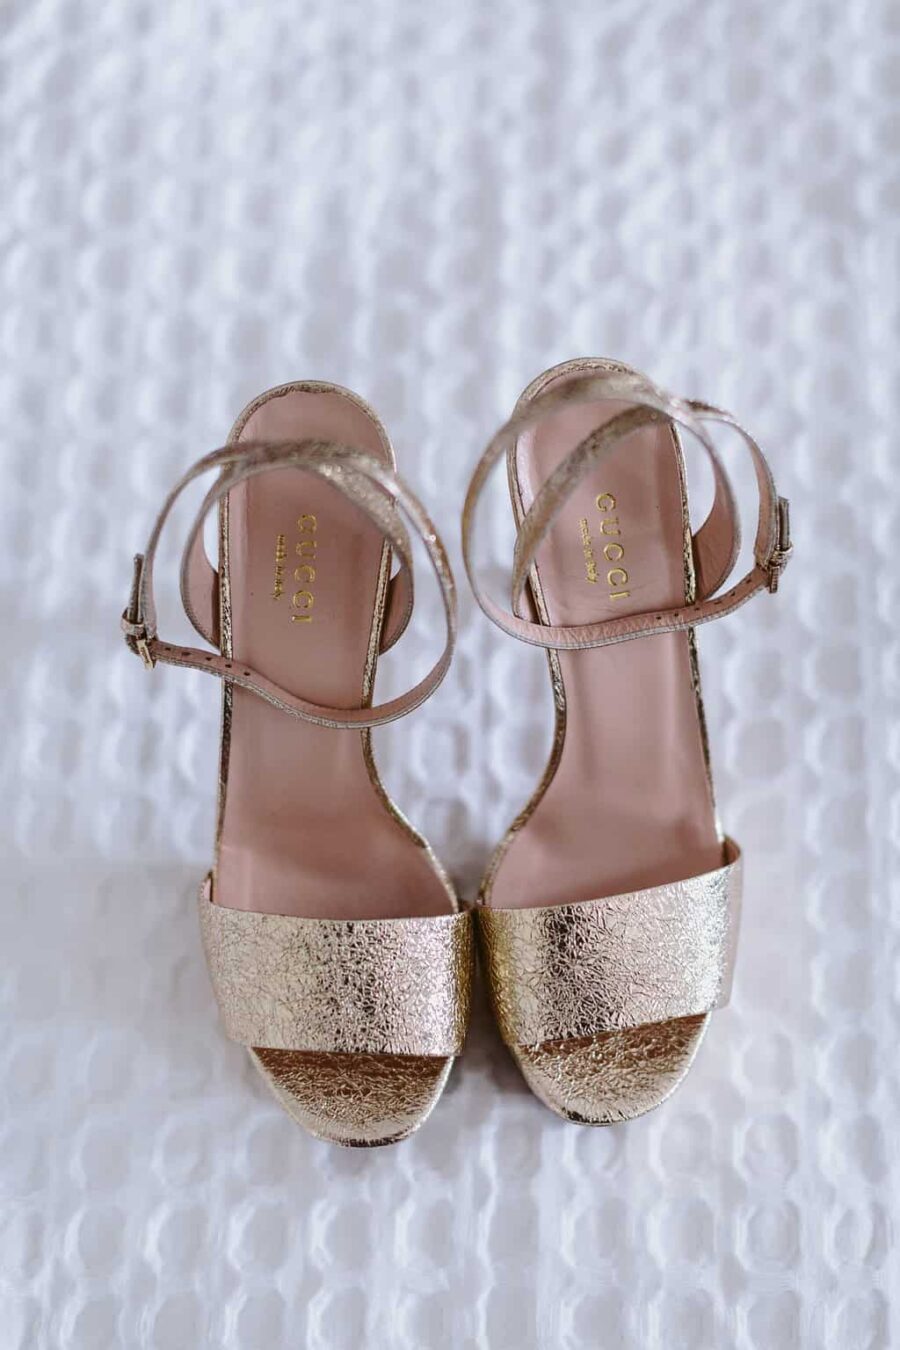 gold Gucci platform heels